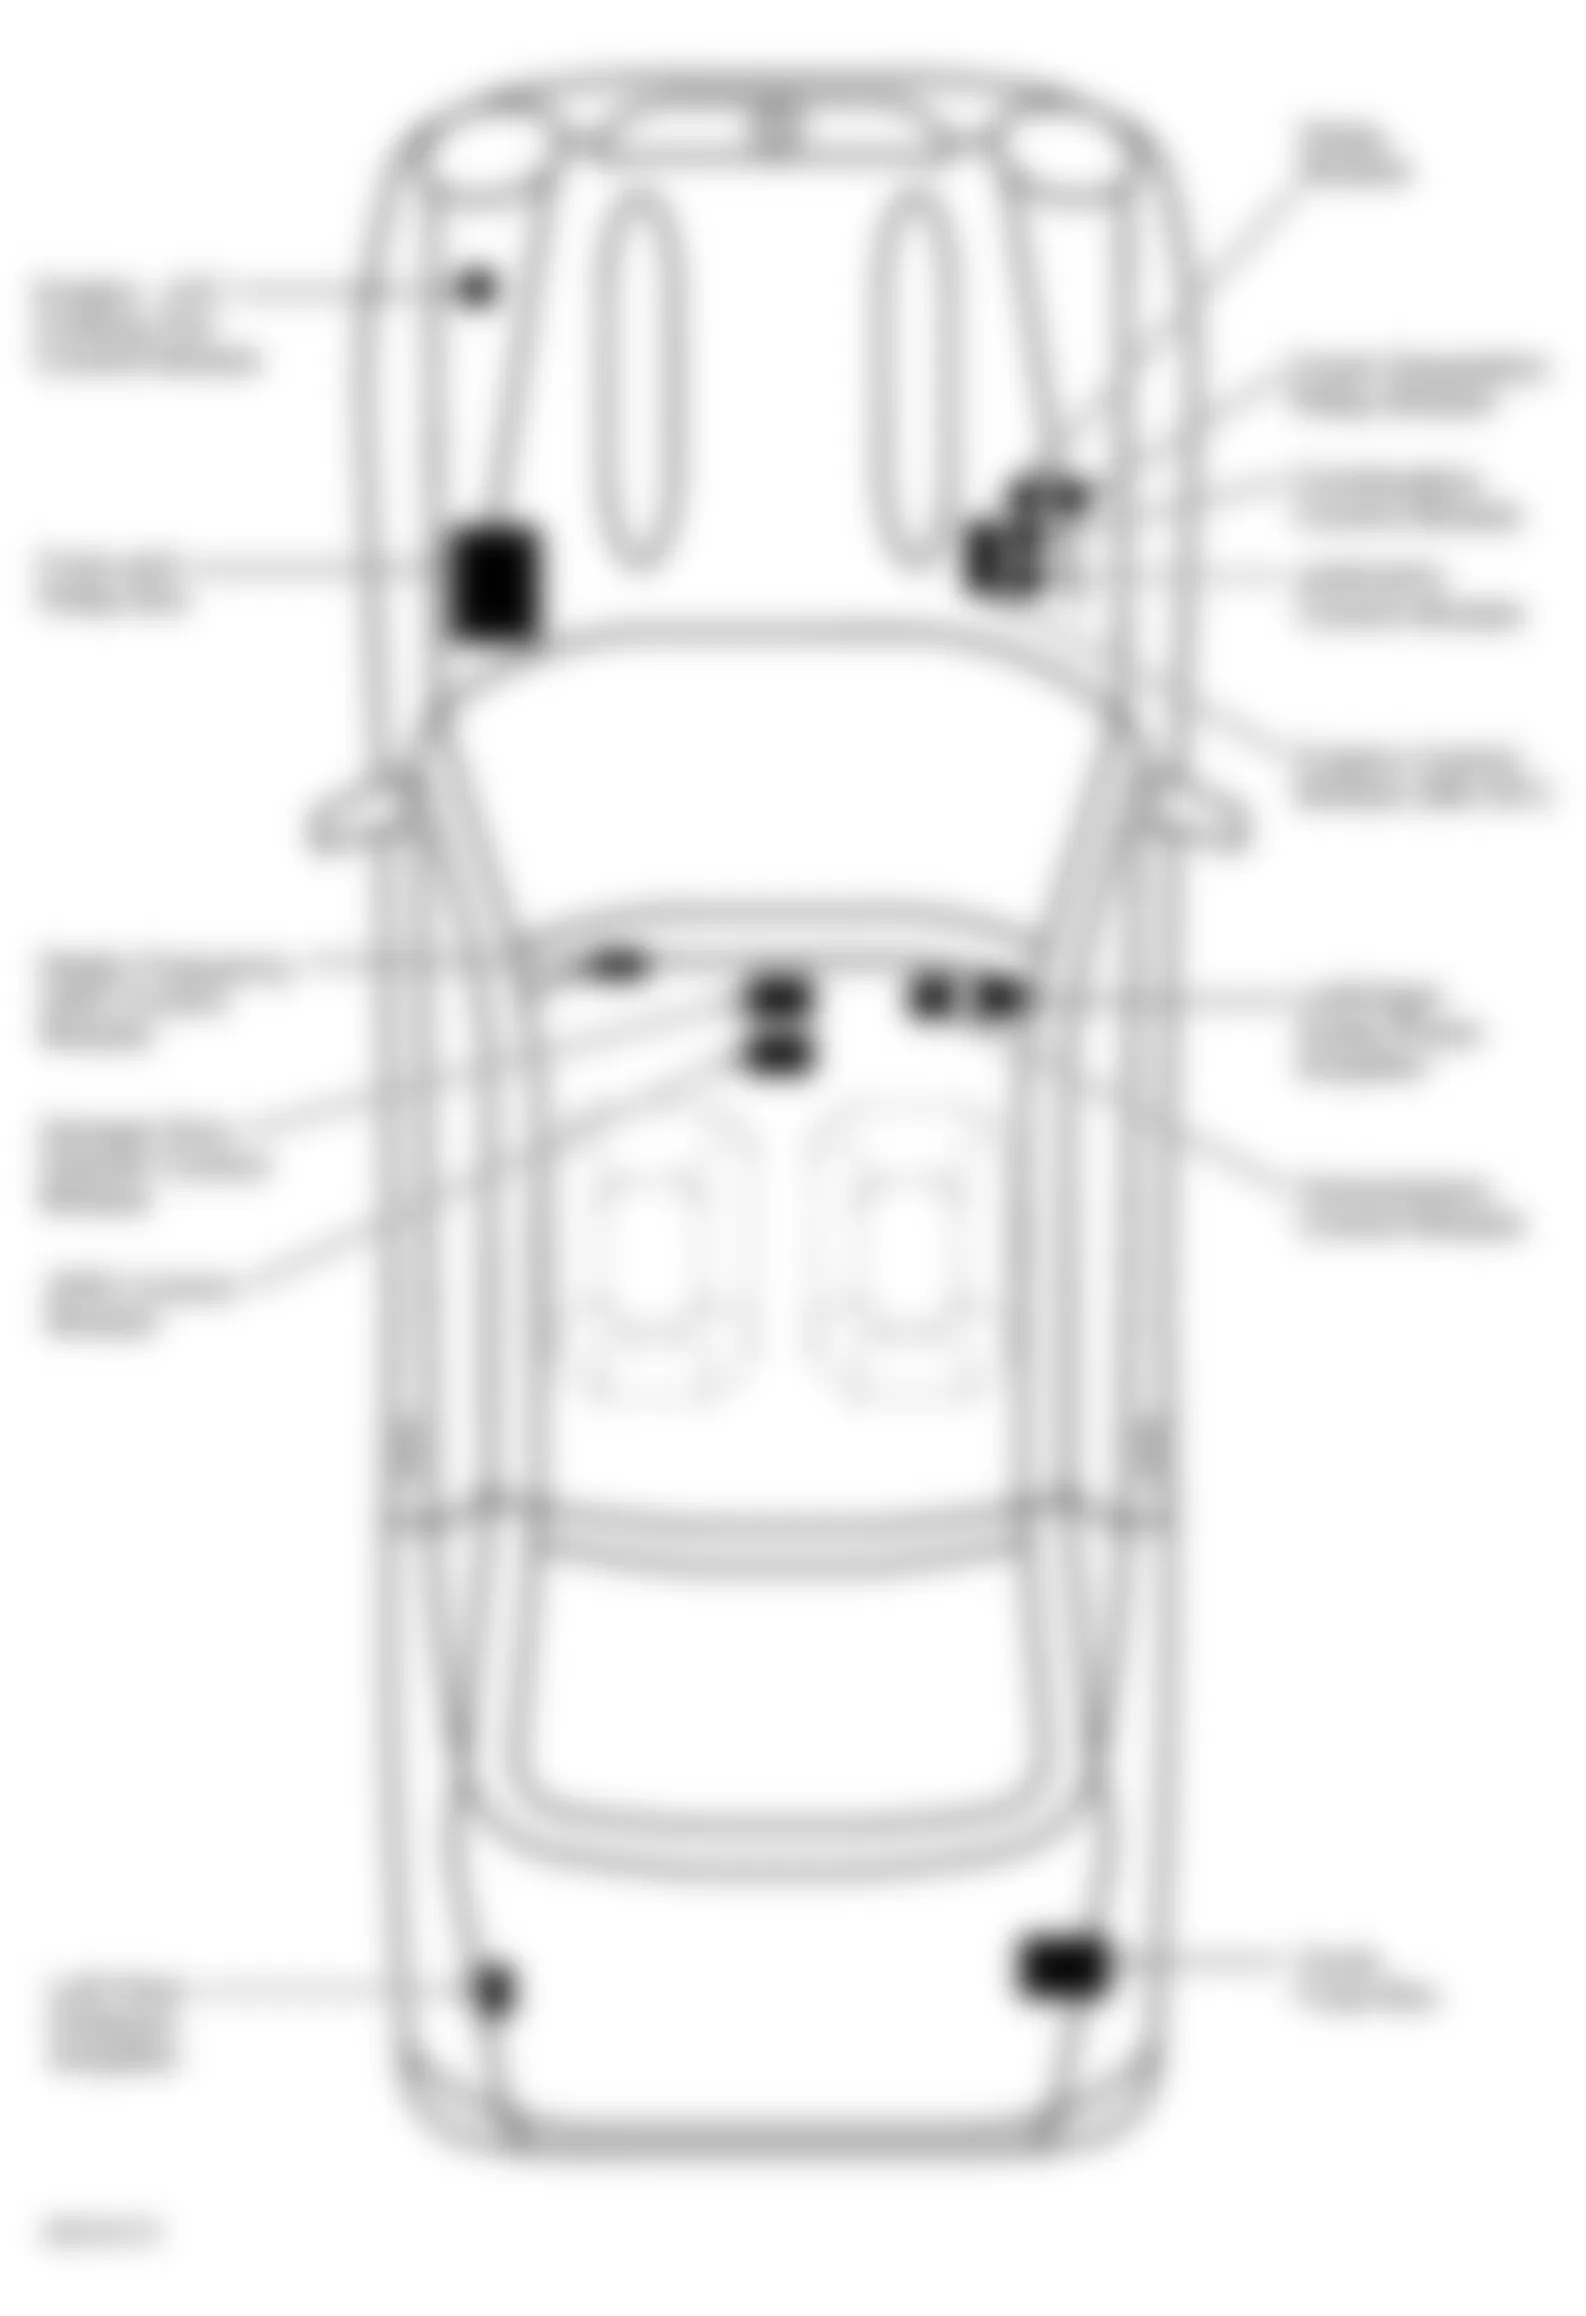 Mercedes-Benz SLK230 2001 - Component Locations -  Locating Trunk Fuse Box F4 (1 Of 2)